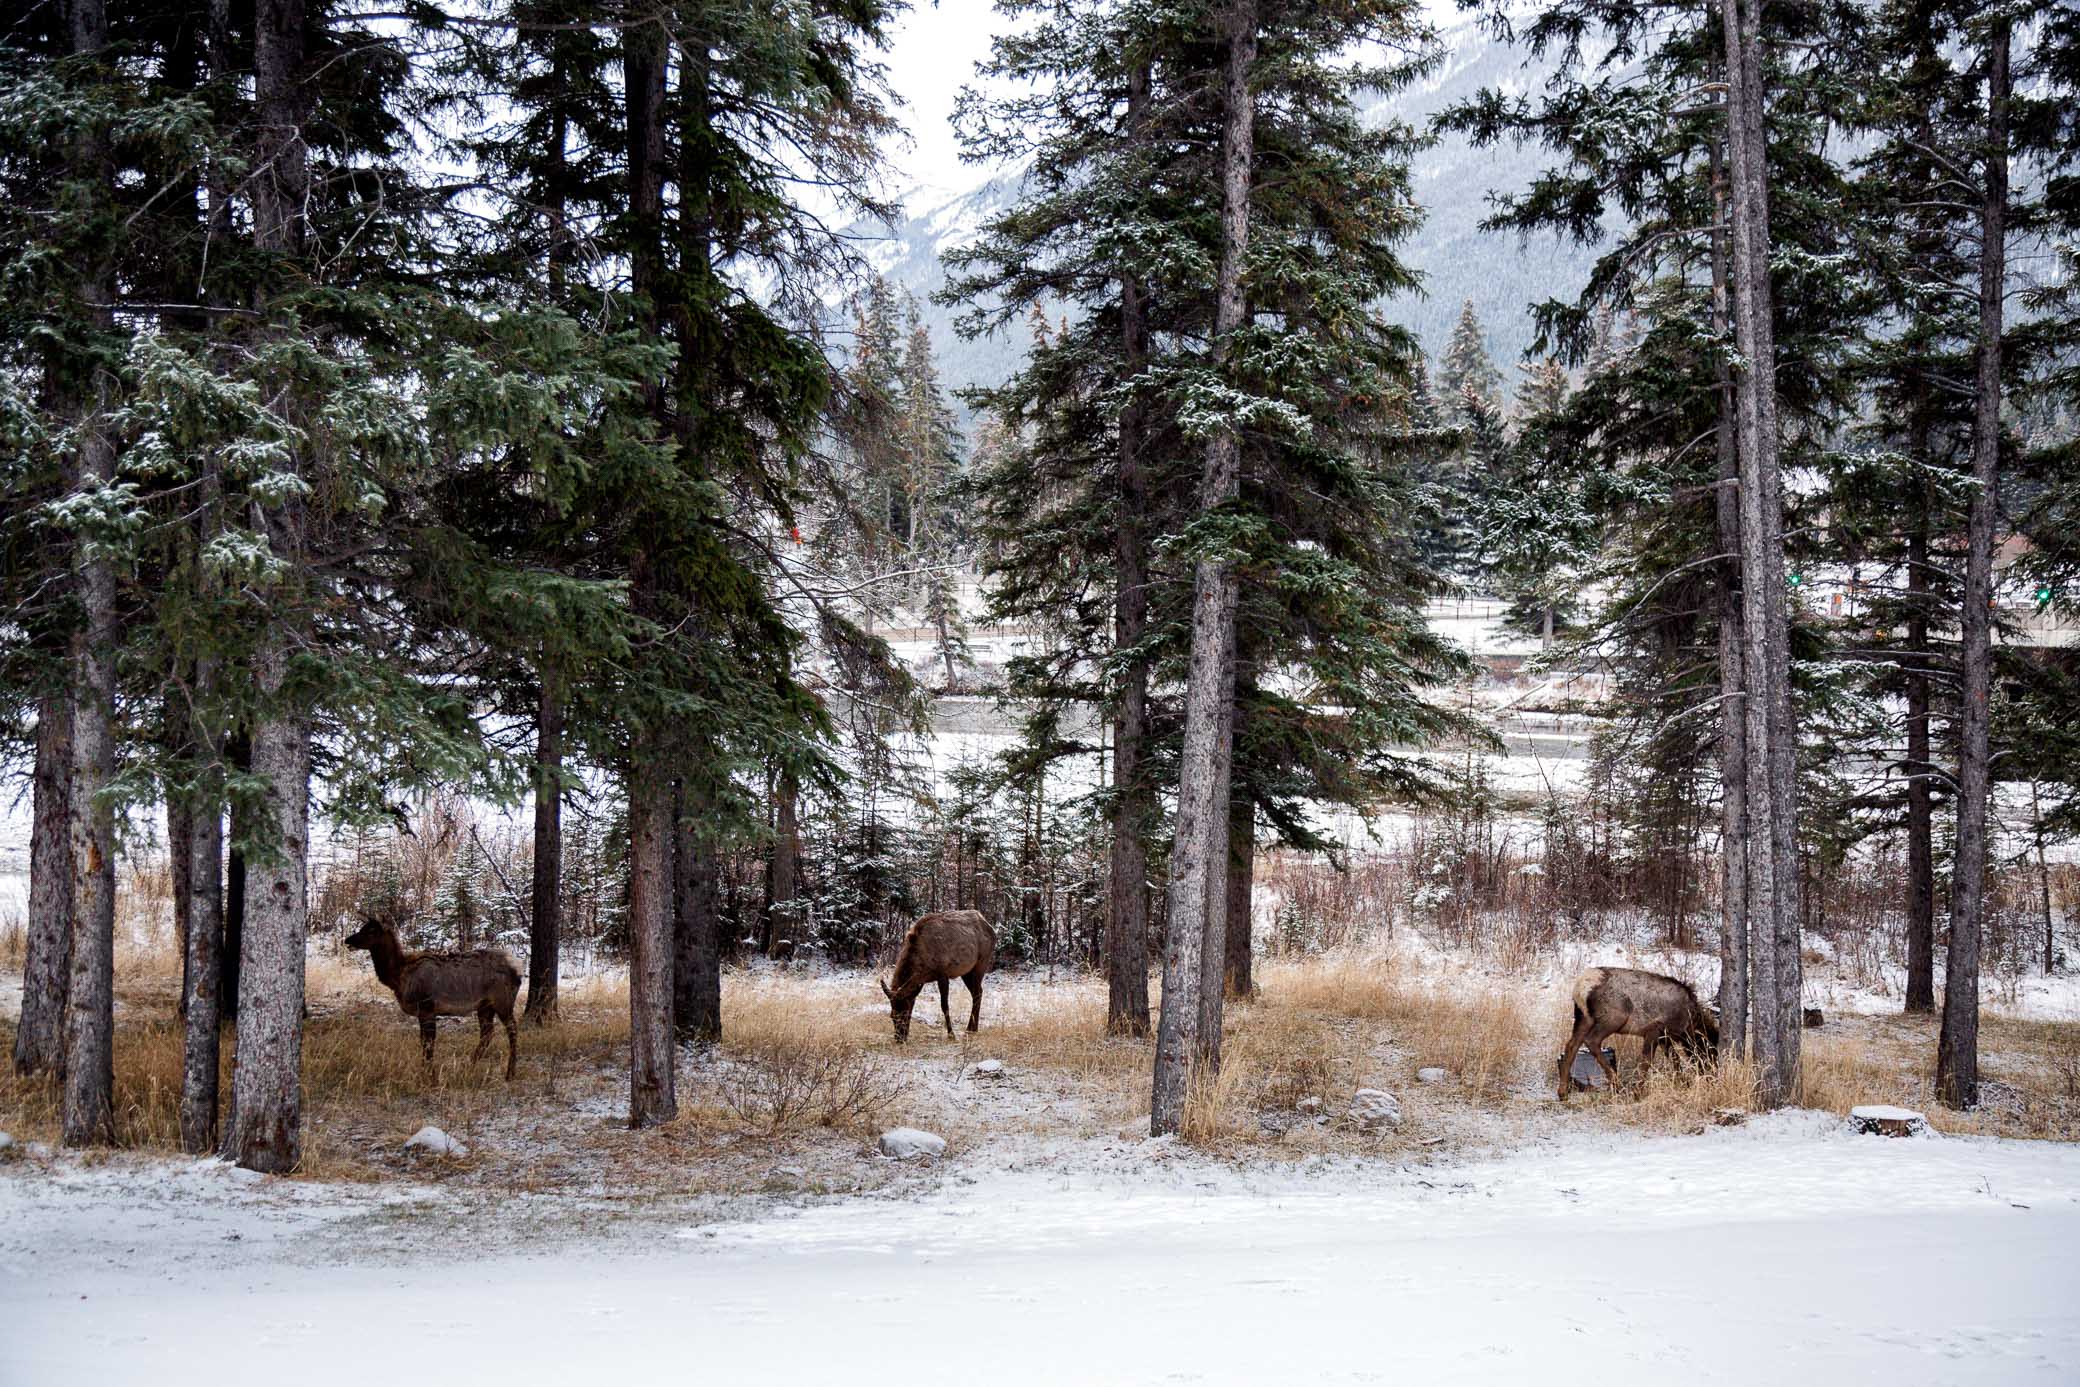 Elk spotted in the snow in banff alberta. Image: Vicki Fletcher